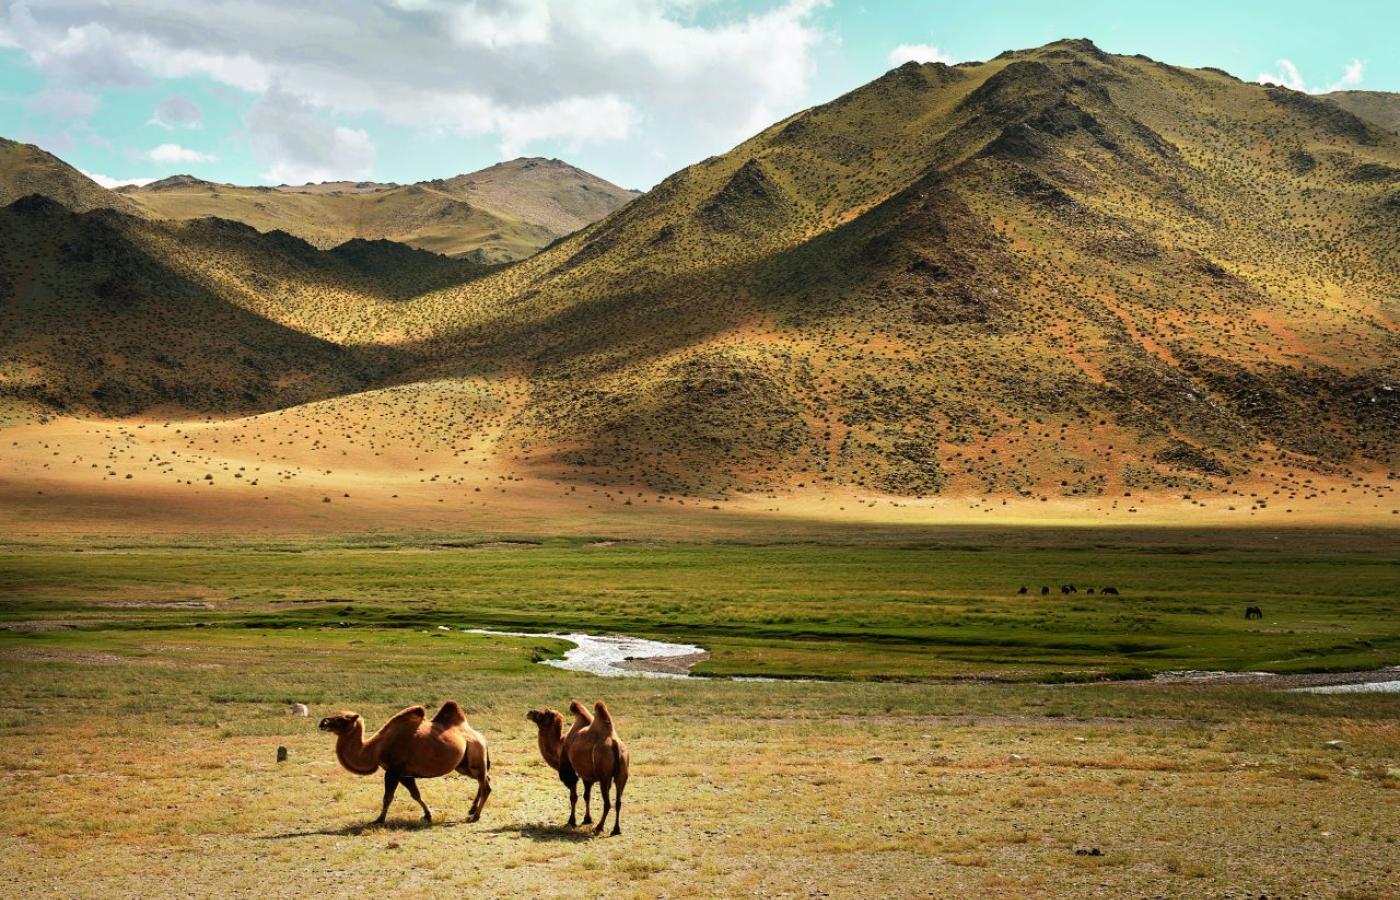  Mongolia. Dzikie wielbłądy dwugarbne spacerują leniwie koło szosy. Widok zapierający dech w piersiach. (Fot. Karolina Jonderko)